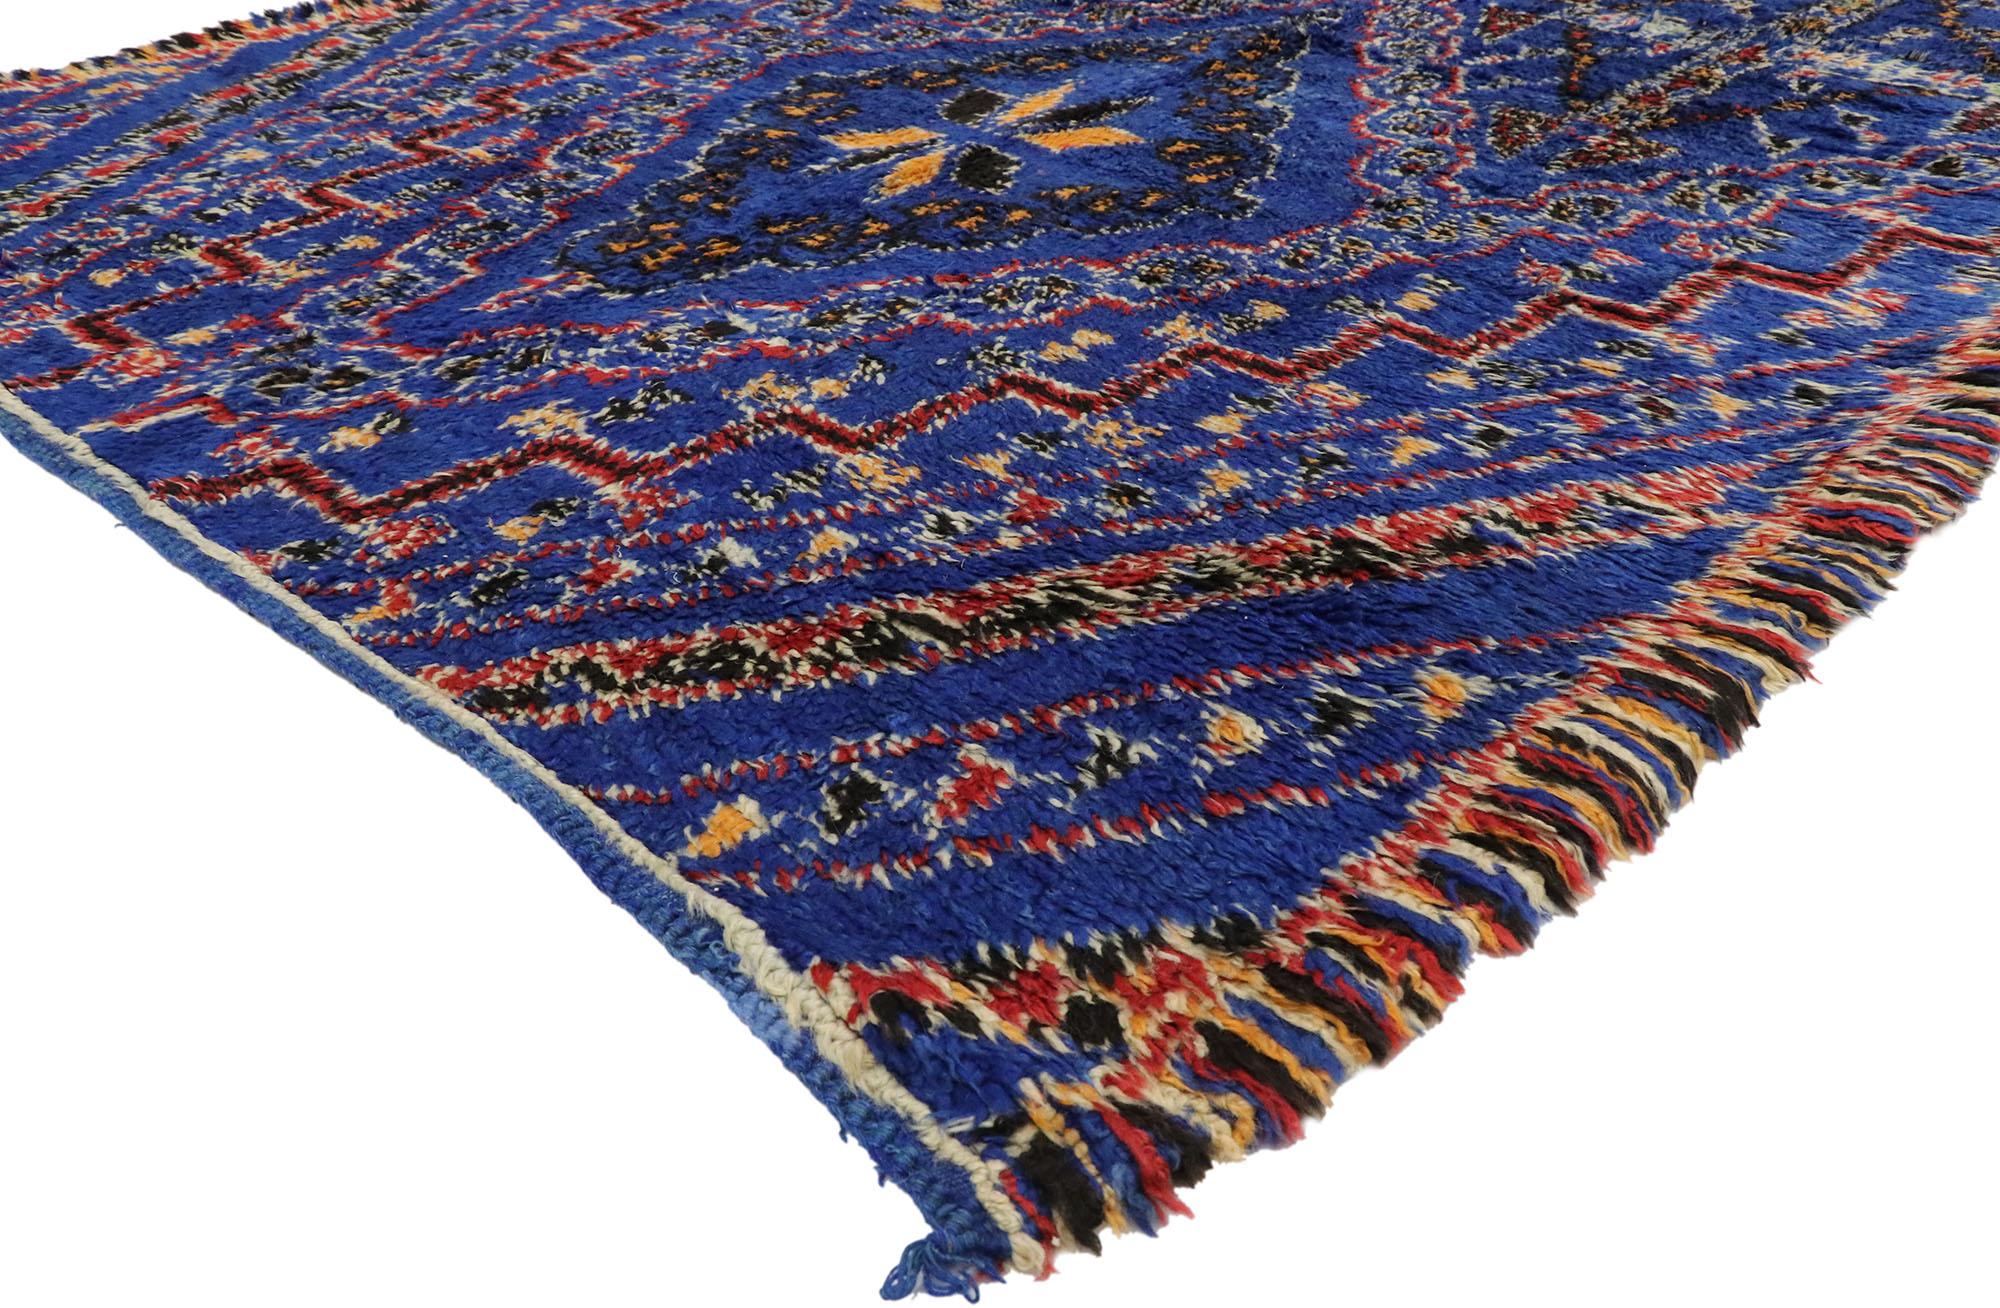 20123 Vintage blauer Beni Mguild Marokko Teppich mit Mid-Century Modern Tribal Stil. Dieser handgeknüpfte blaue Beni M'Guild Marokko-Teppich aus Wolle zeigt ein Rautengitter aus konzentrischen Rauten, Kreuzmotiven, achtzackigen Sternen, kleineren